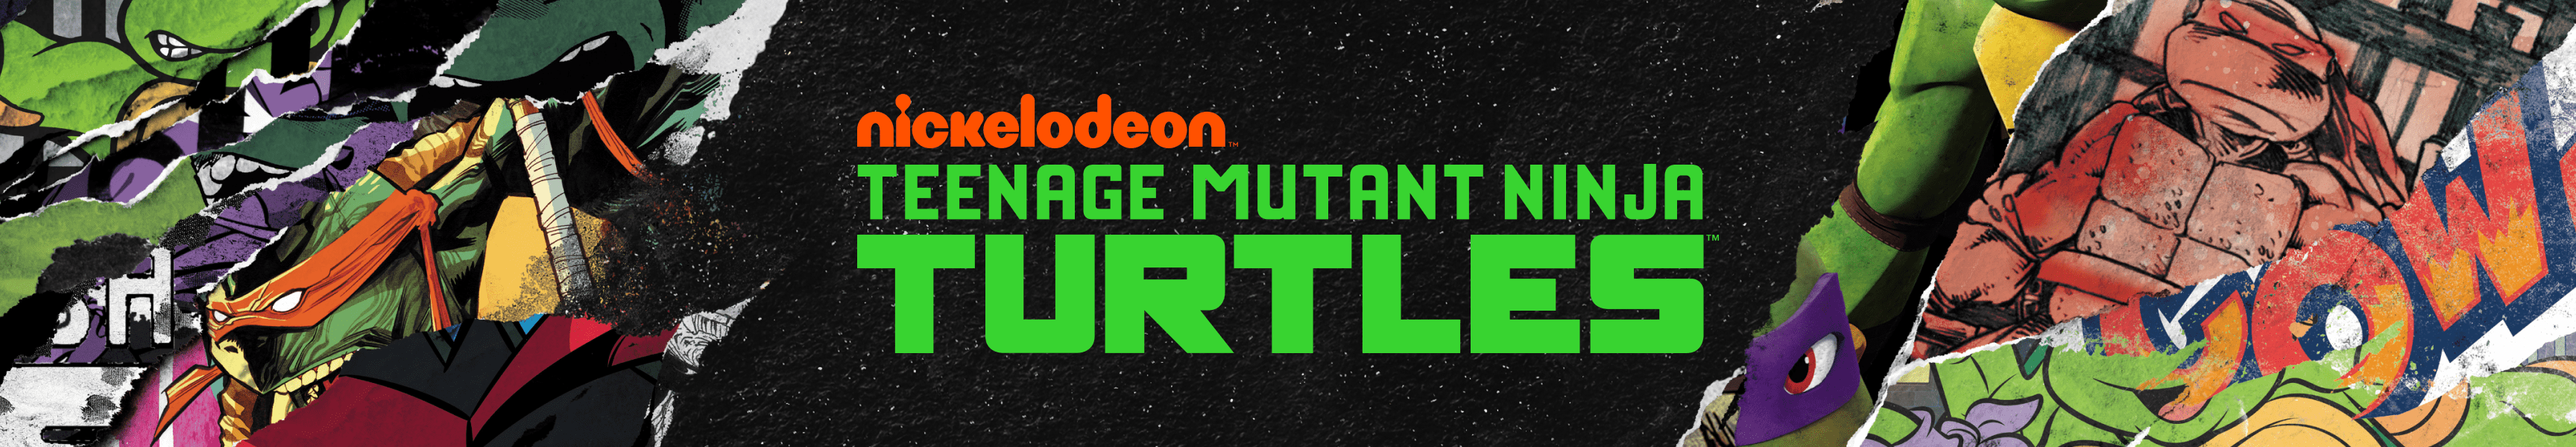 Teenage Mutant Ninja Turtles Meistverkaufte Produkte